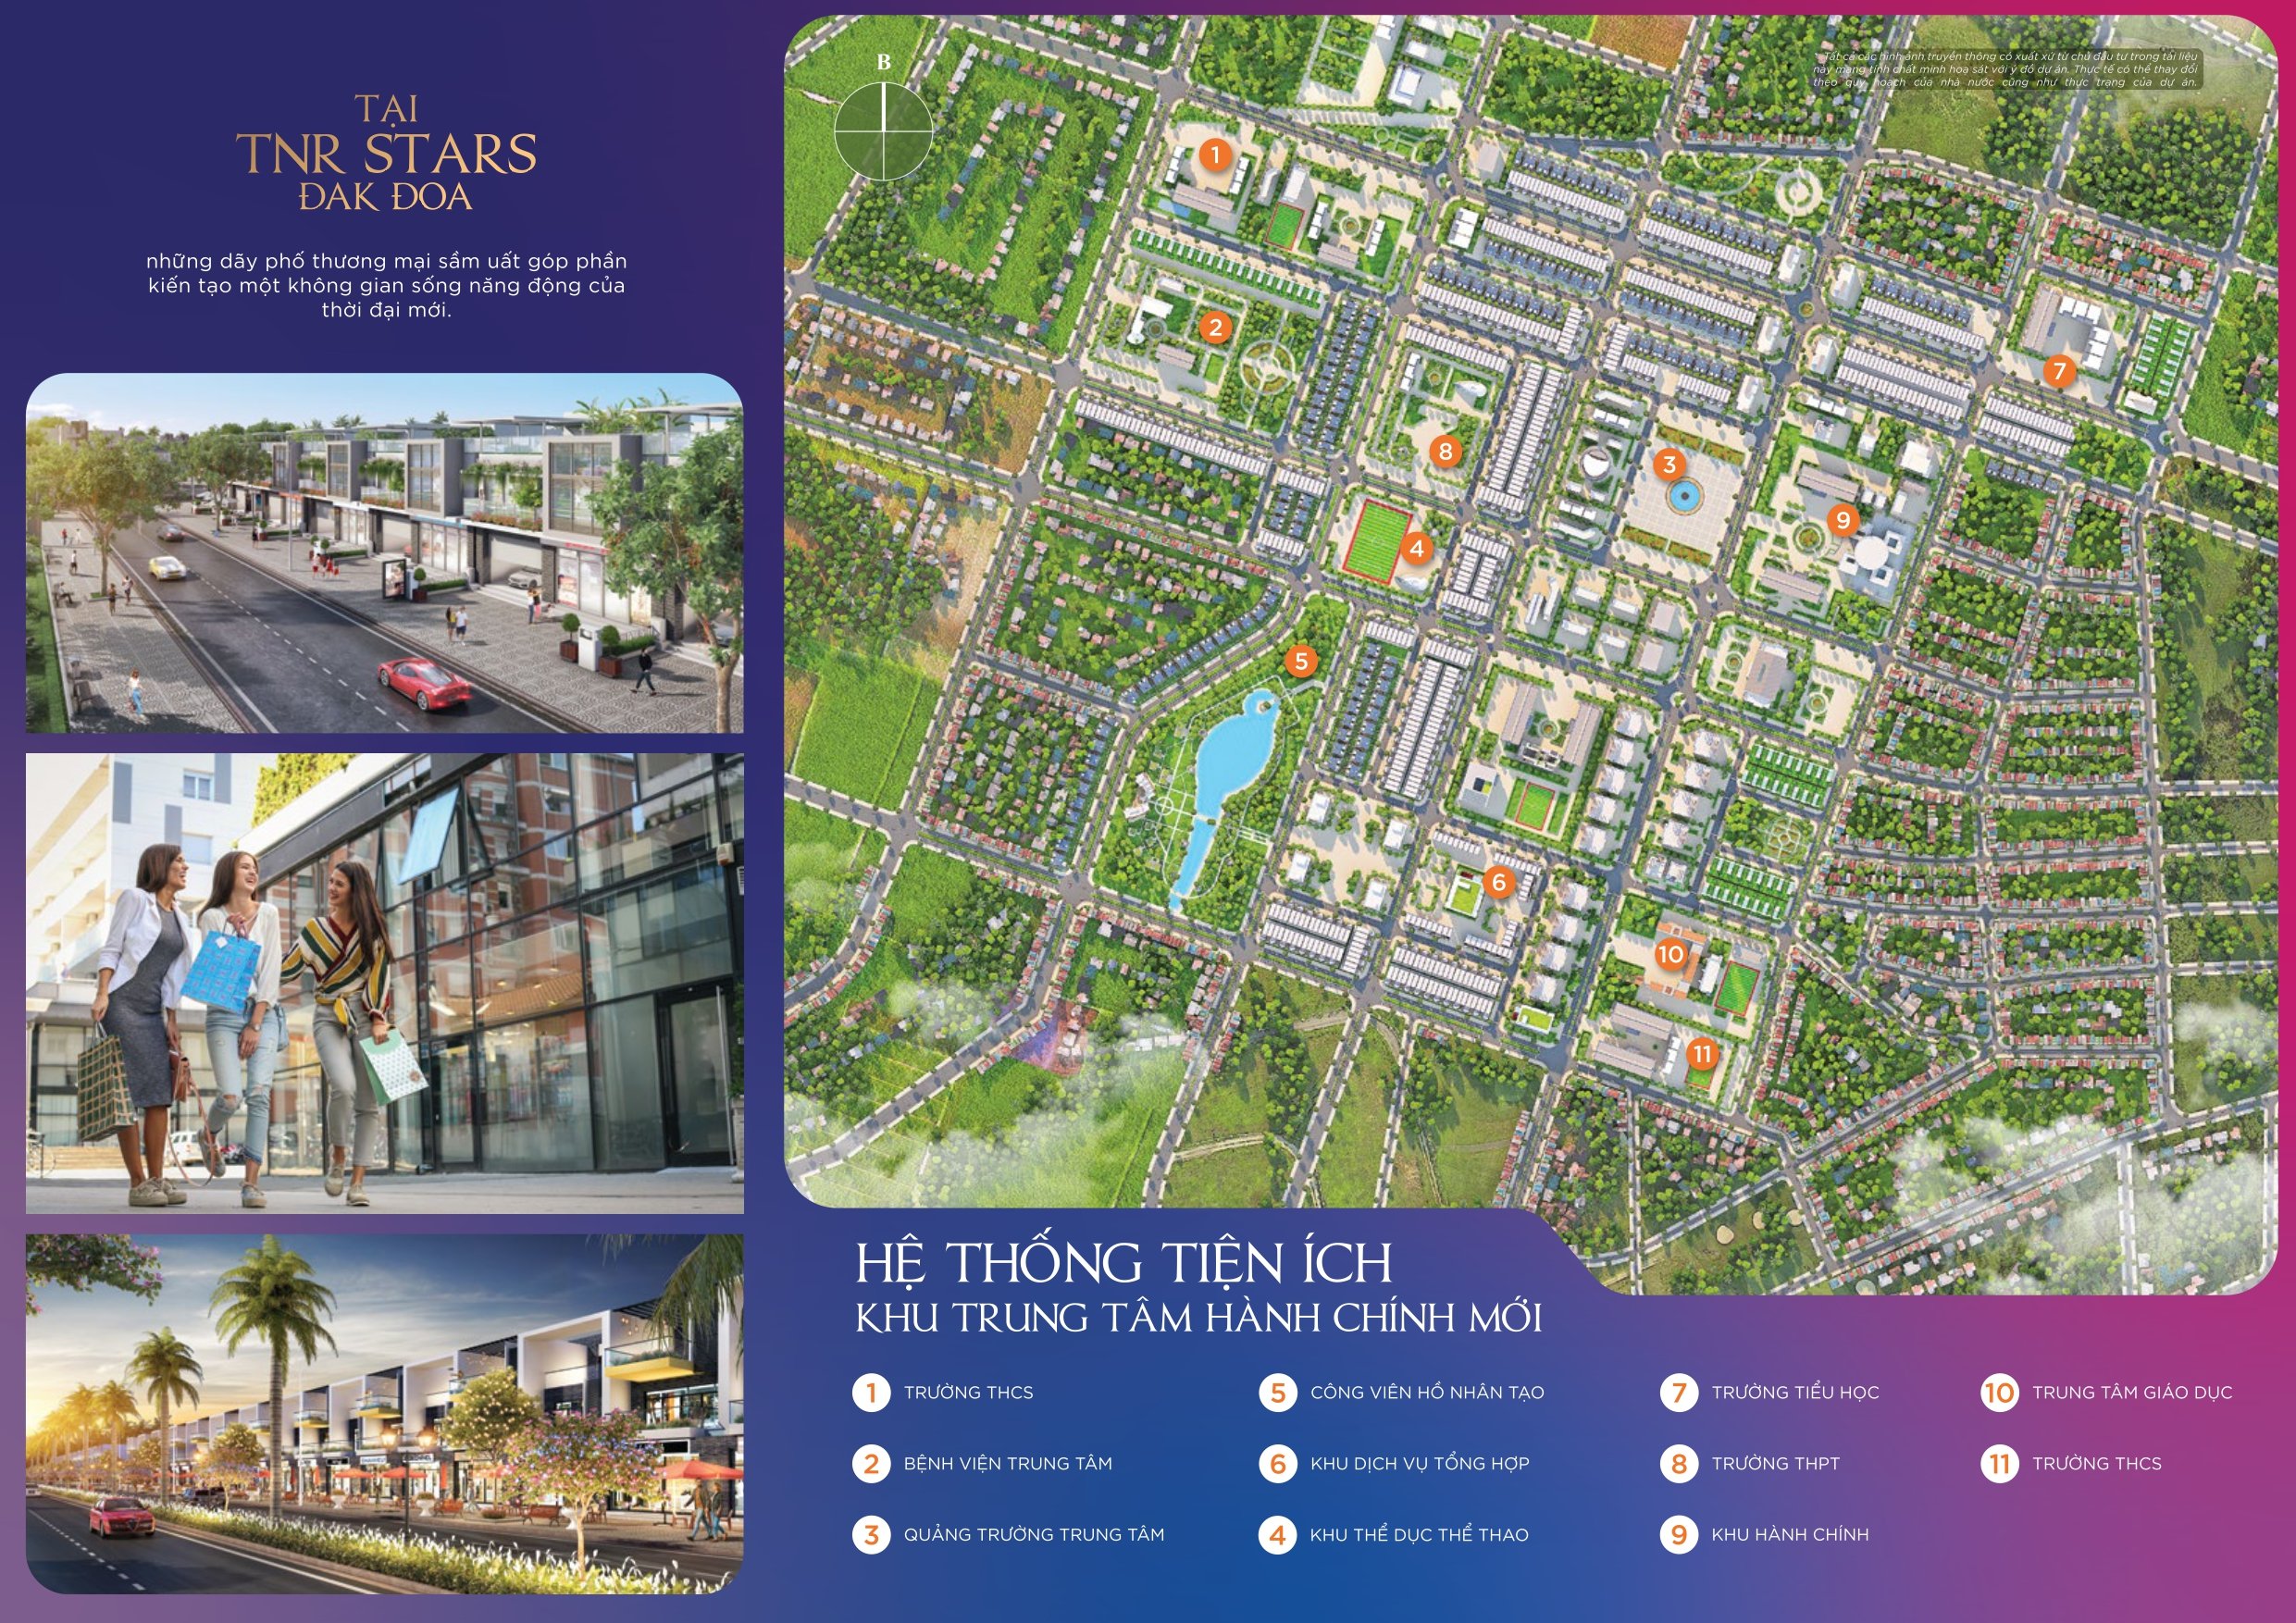 [ MỞ BÁN ĐỢT 1] Đất nền Đại đô thị TNR Stars Đak Đoa, giá đầu tư chỉ 8,9 triệu 3